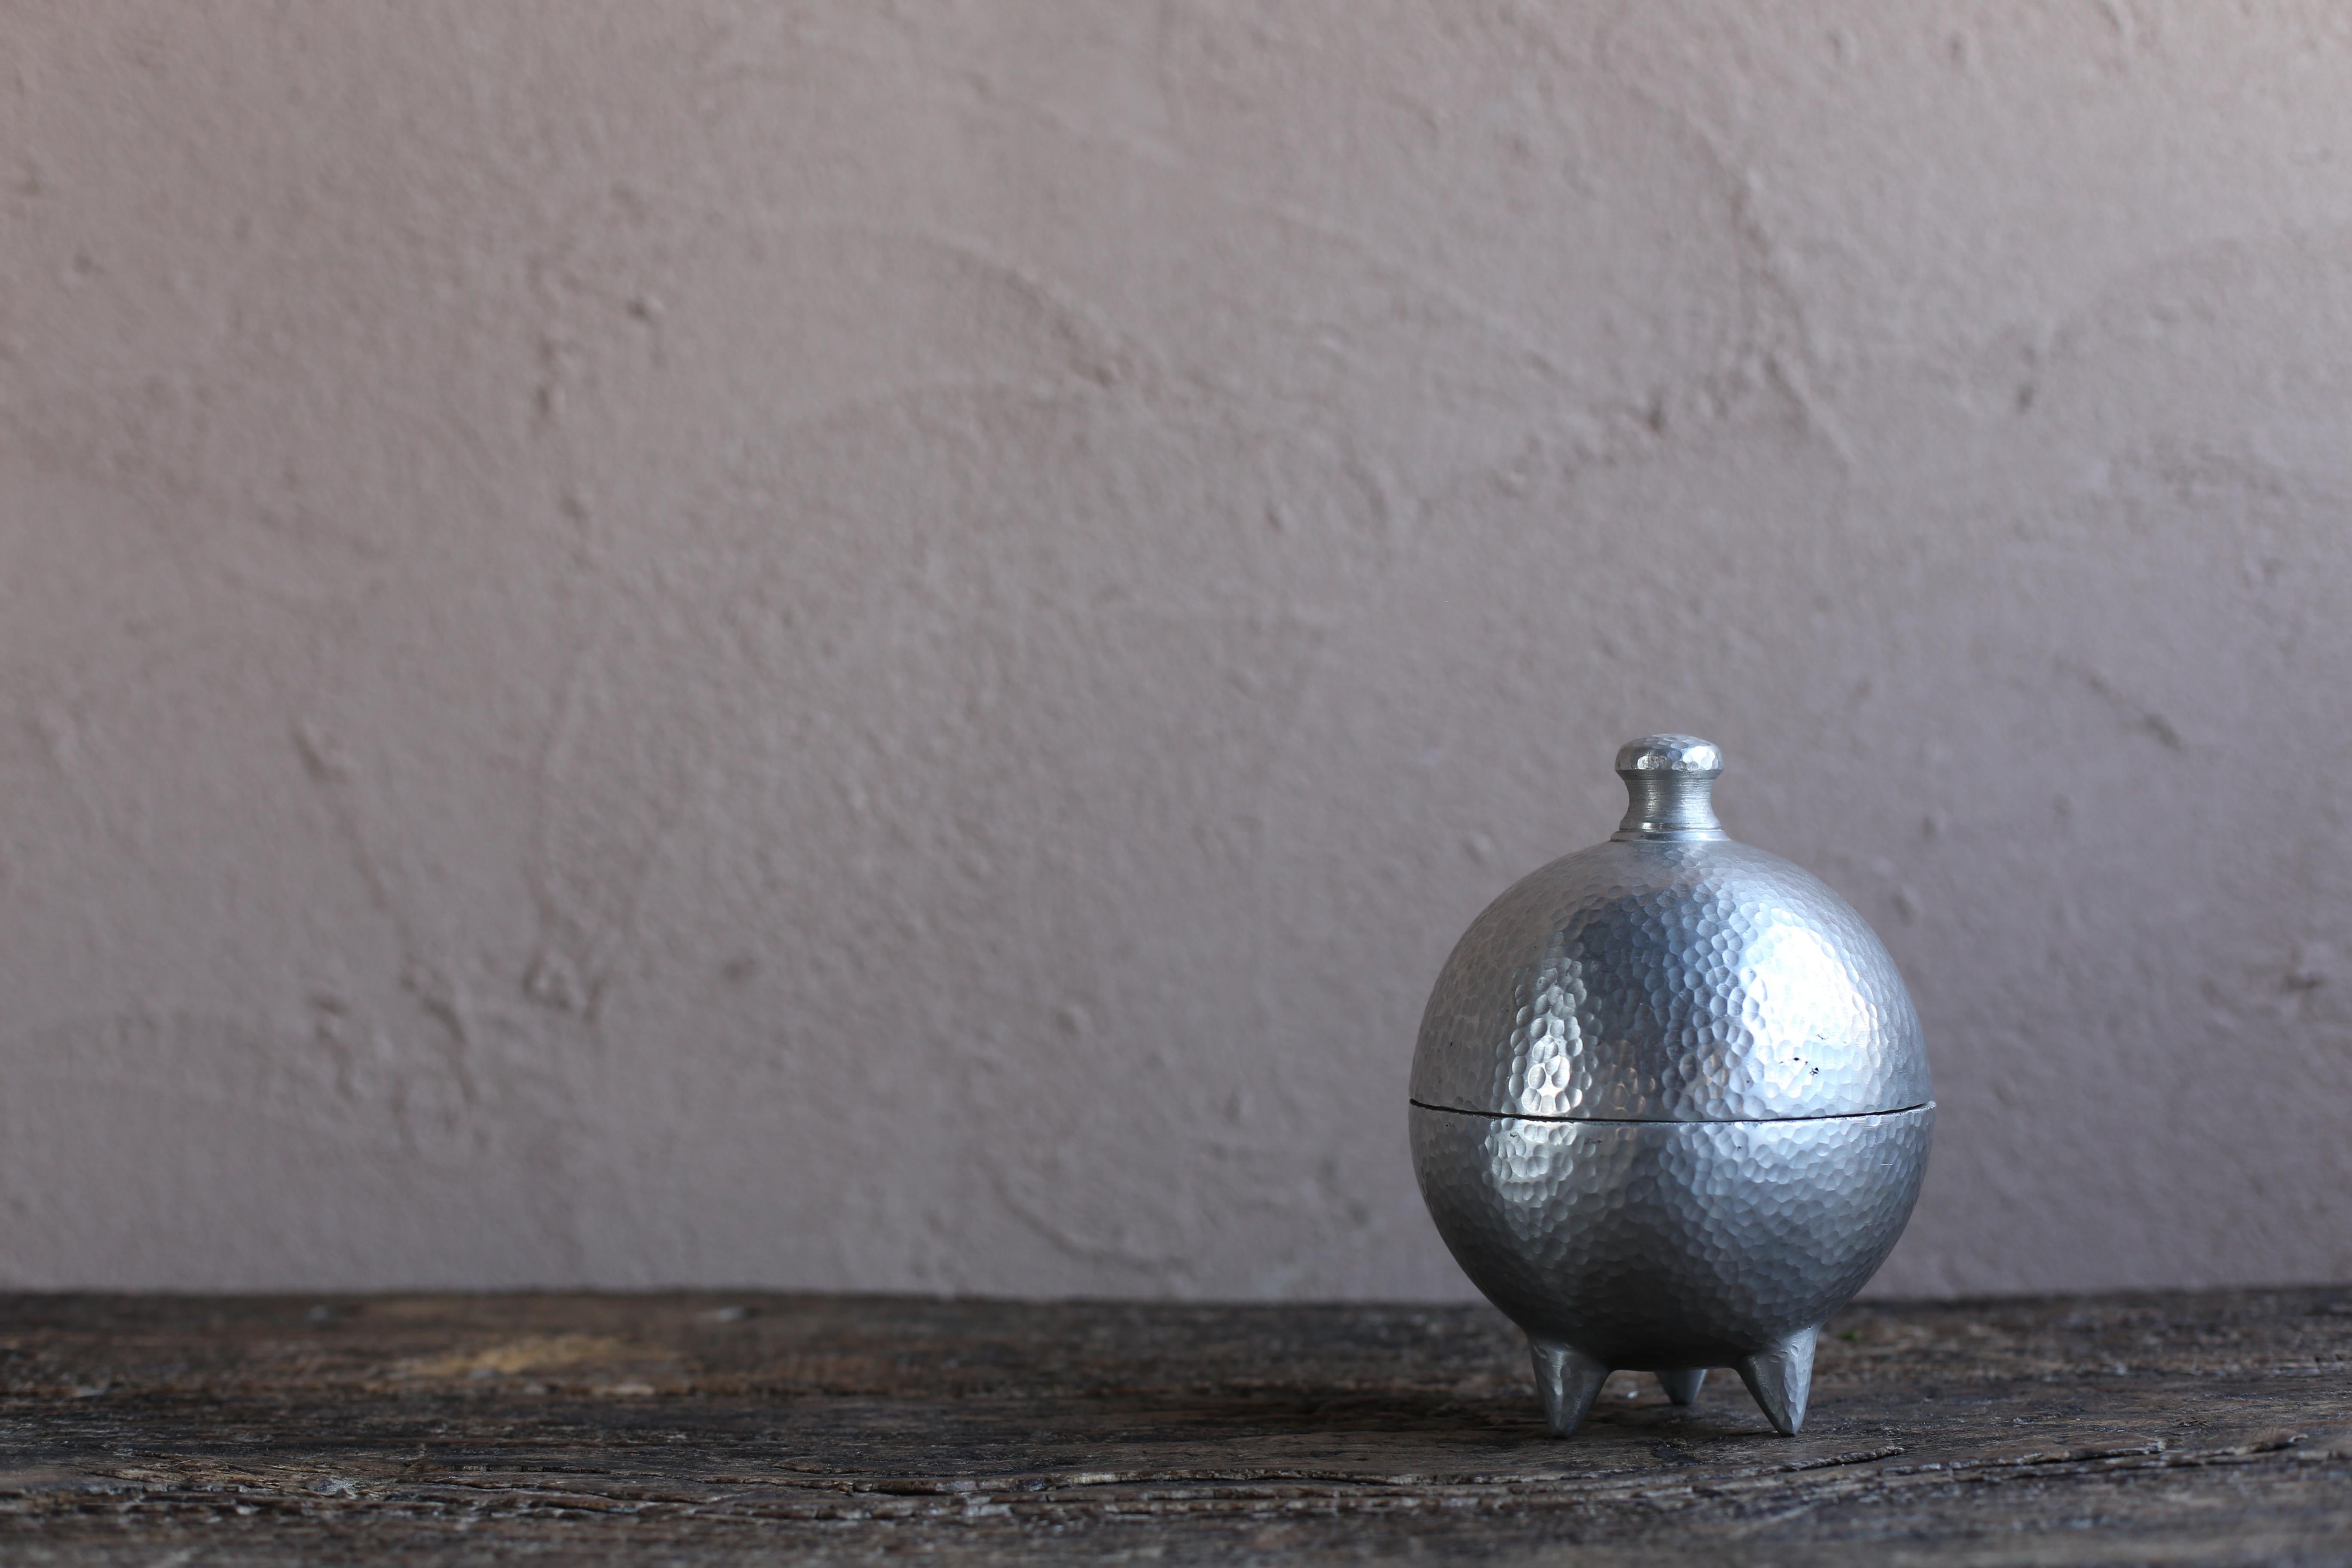 Une mallette d'accessoires vintage réalisée par un artiste marocain. Fabriqué en aluminium moulé avec une forme unique. La texture qui semble être finement tapée est également intéressante.